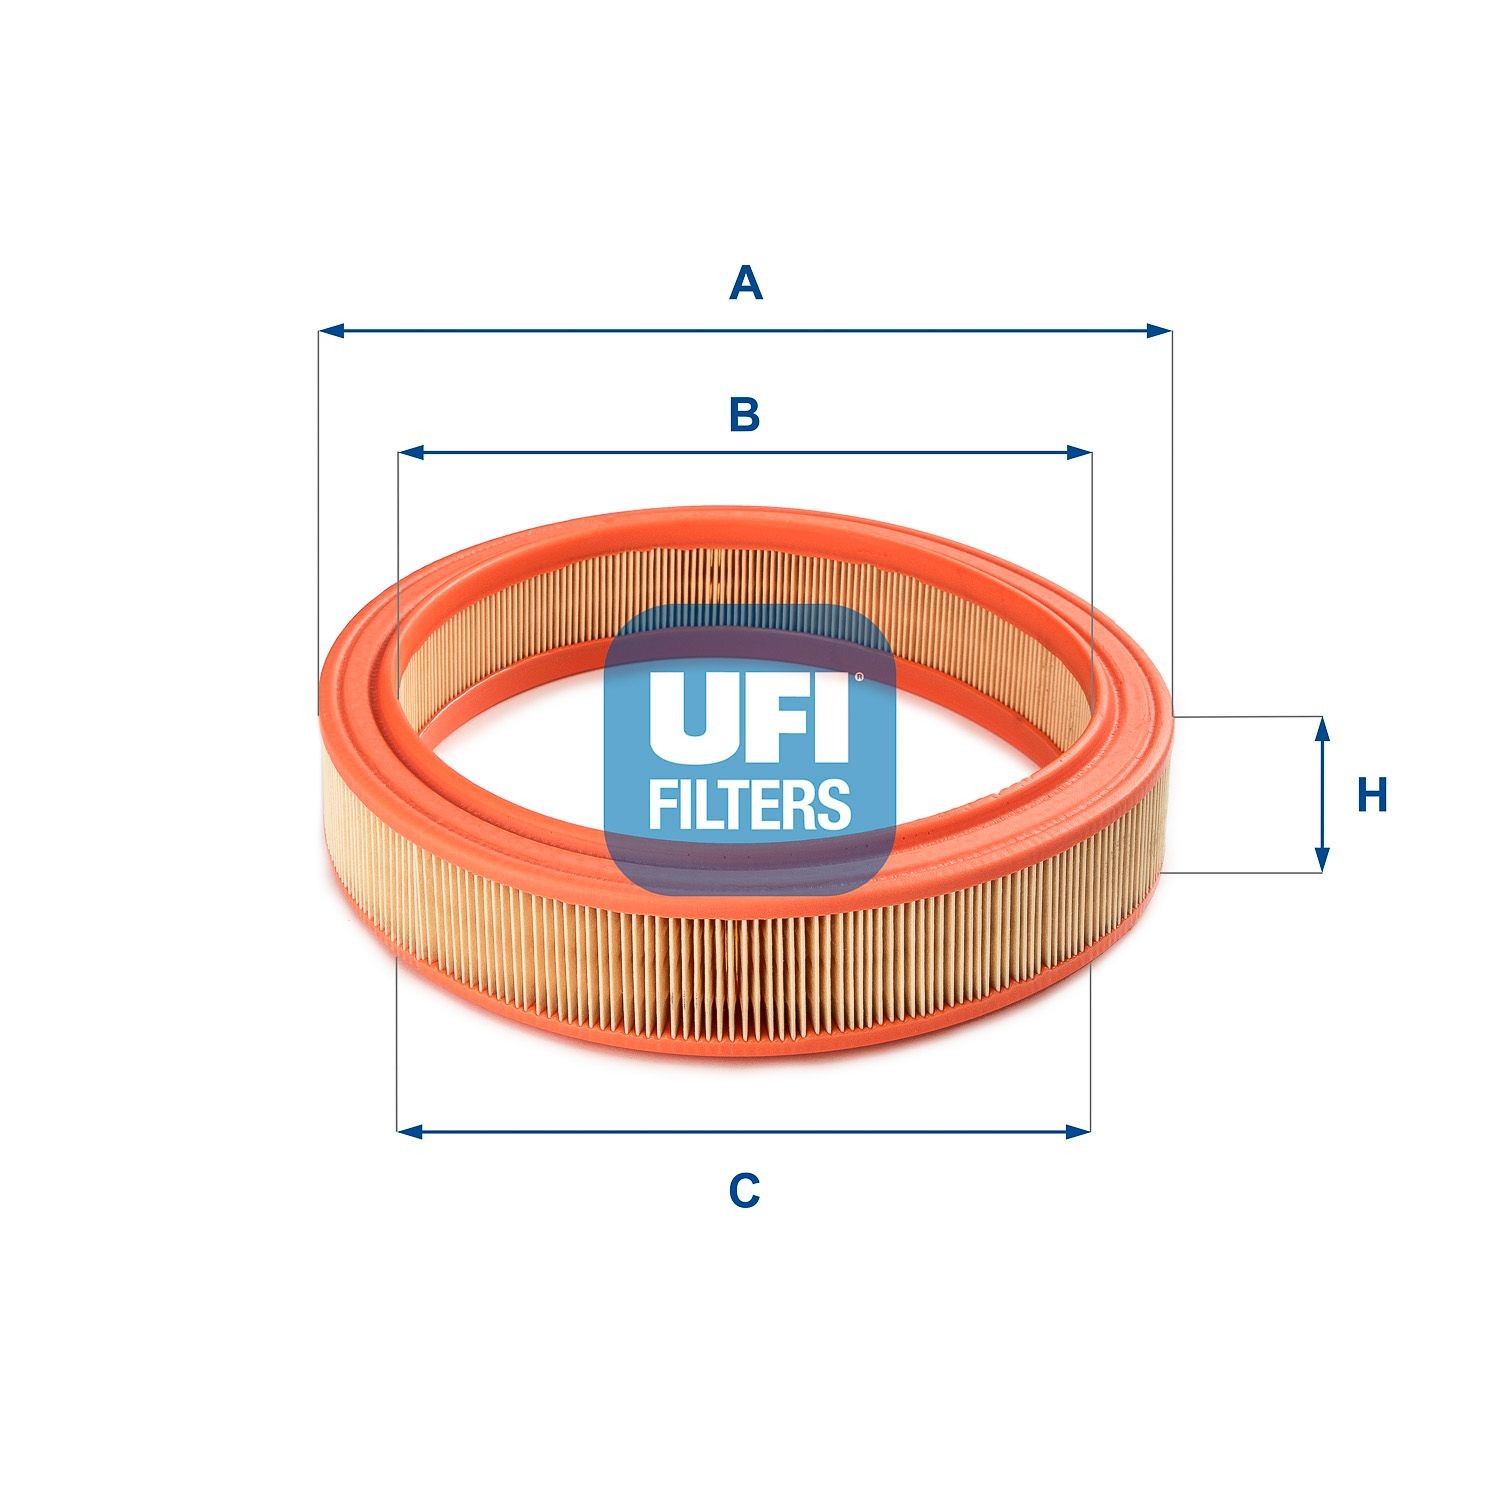 30.038.01 Air filter 30.038.01 UFI 61mm, 274mm, Filter Insert